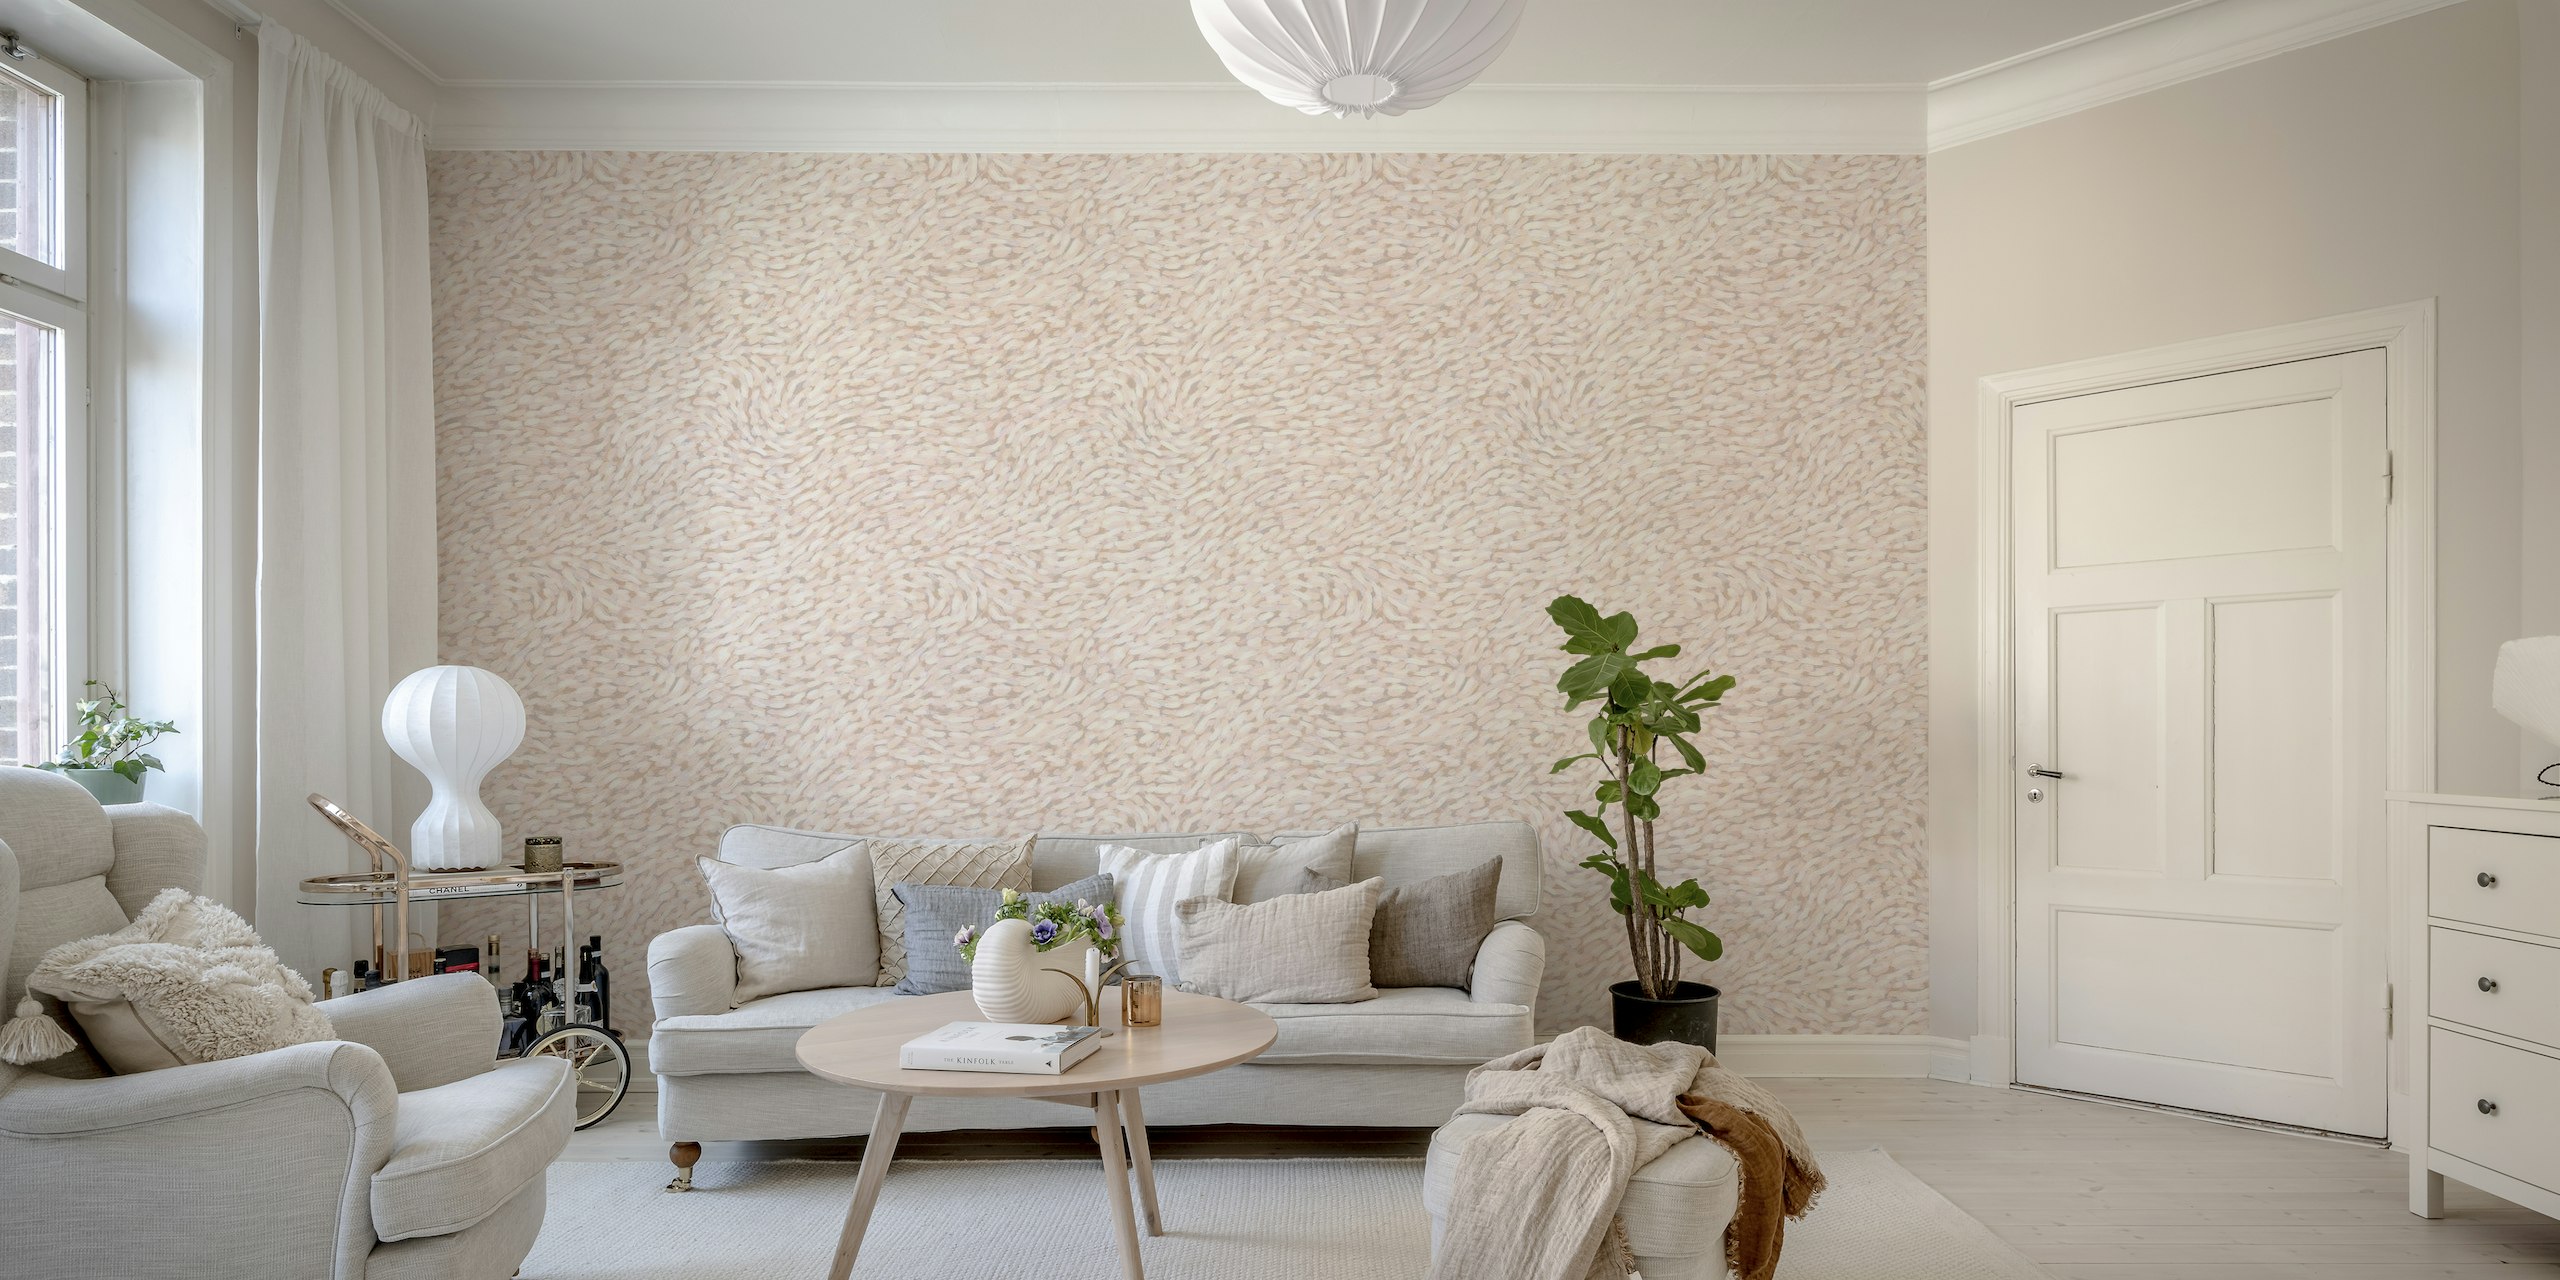 Flow - mural de parede pêssego com um padrão abstrato texturizado em tons suaves de pêssego